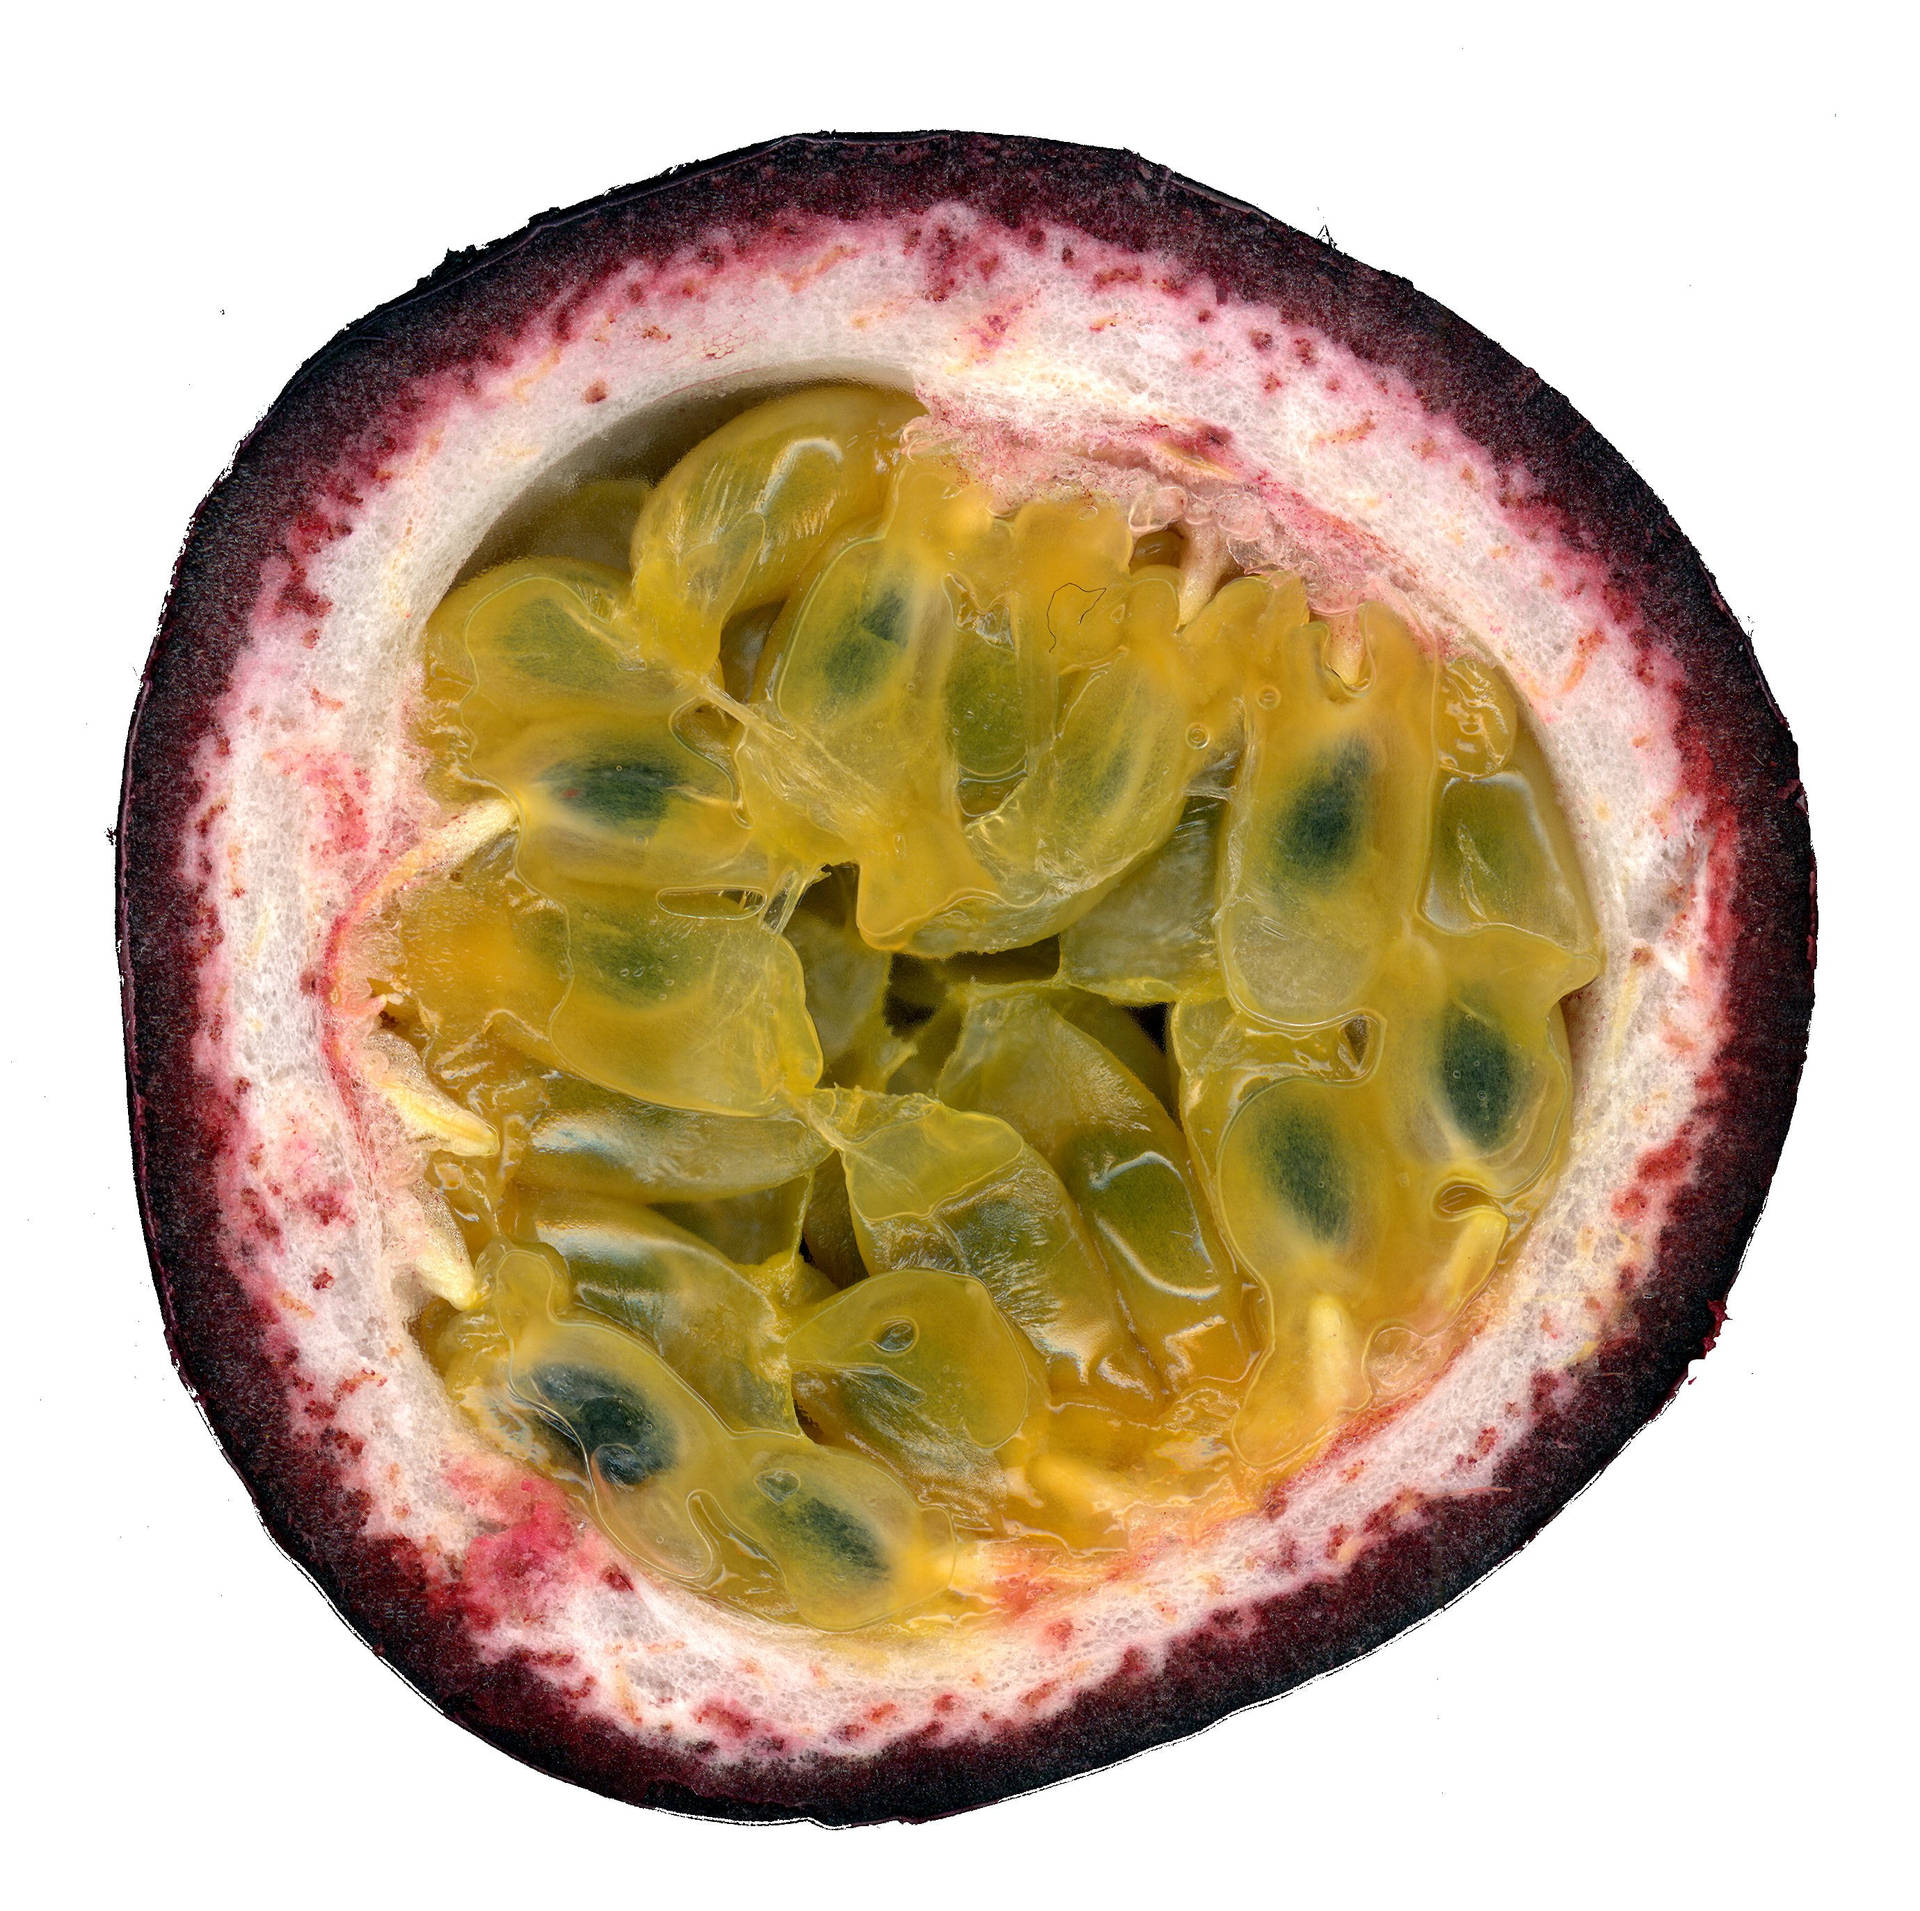 Halbepassionsfrucht Von Oben Betrachtet Mit Grünen Fruchtfleisch Wallpaper